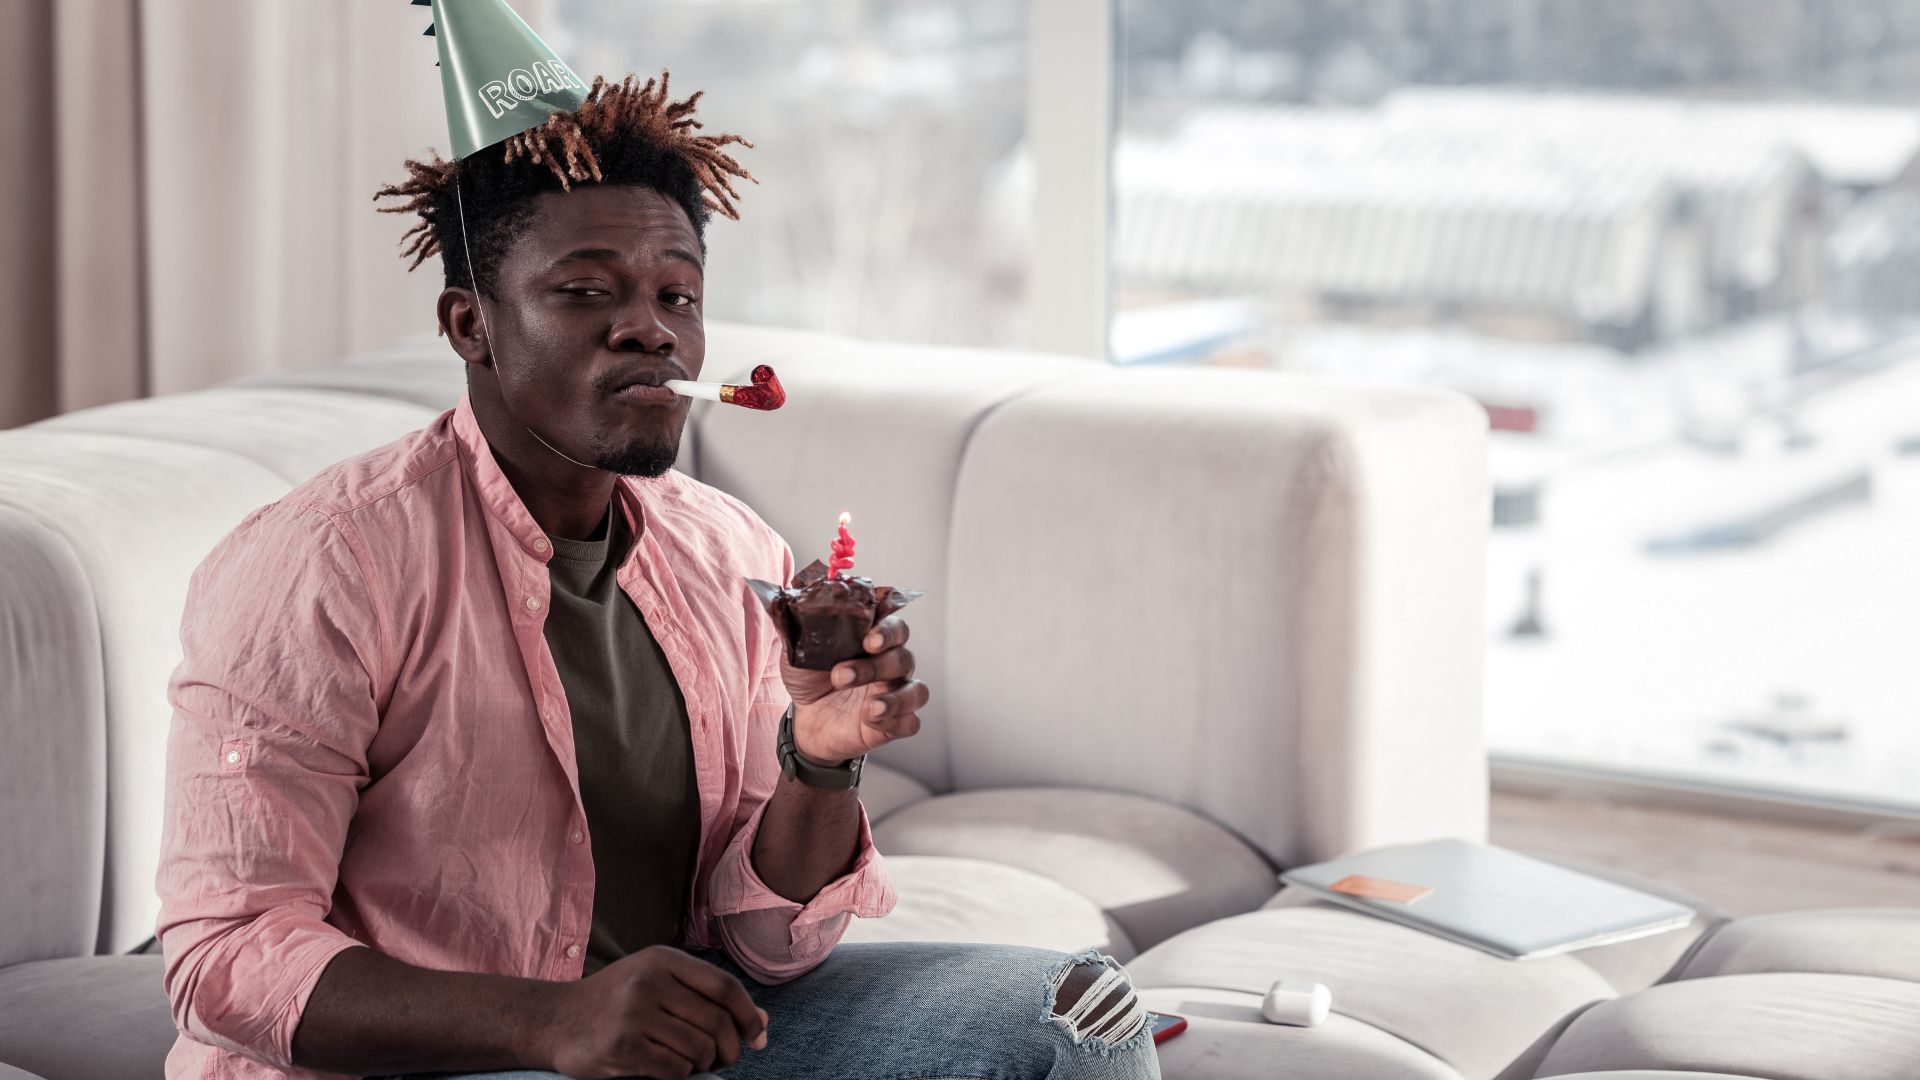 Imagem de um homem negro com chapéu de aniversário, com uma língua de sogra na boca e um cupcake com uma vela no topo, na mão sentado no sofá.